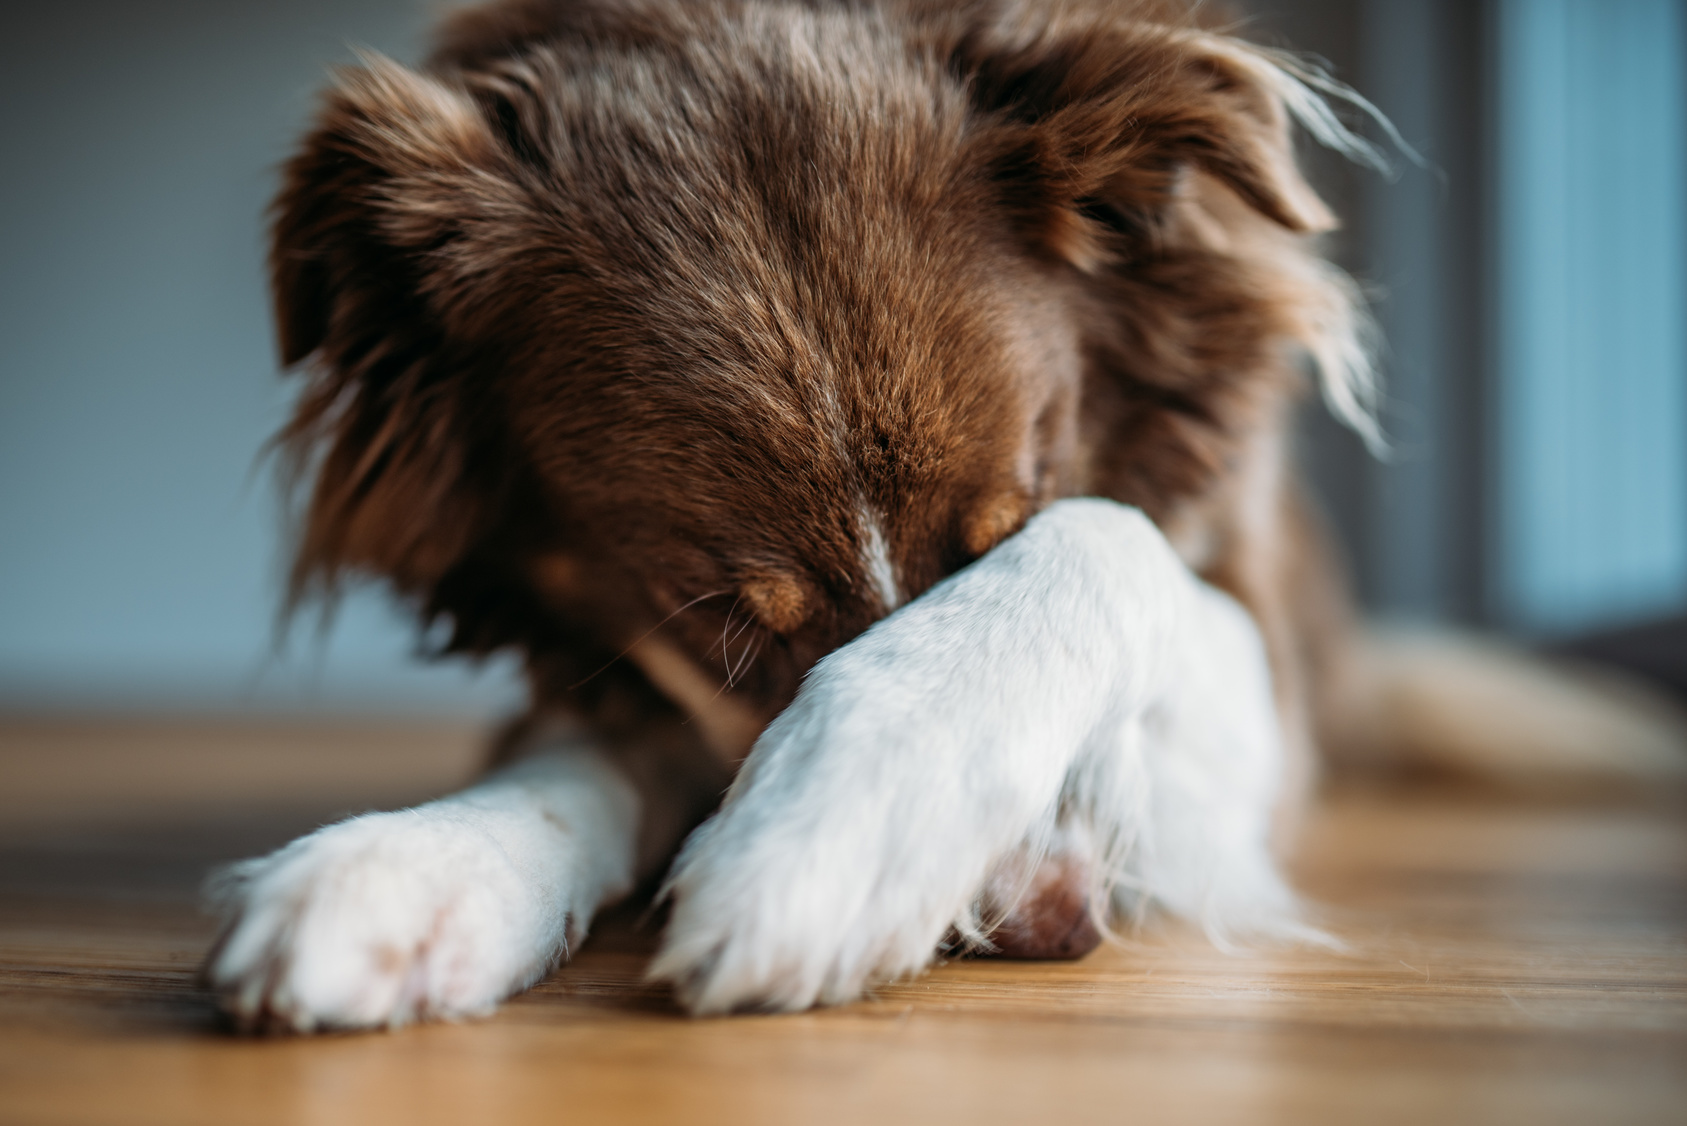 Justering lærling boykot Min hund er bange for fyrværkeri - 6 Tips mod stress | zooplus magasinet